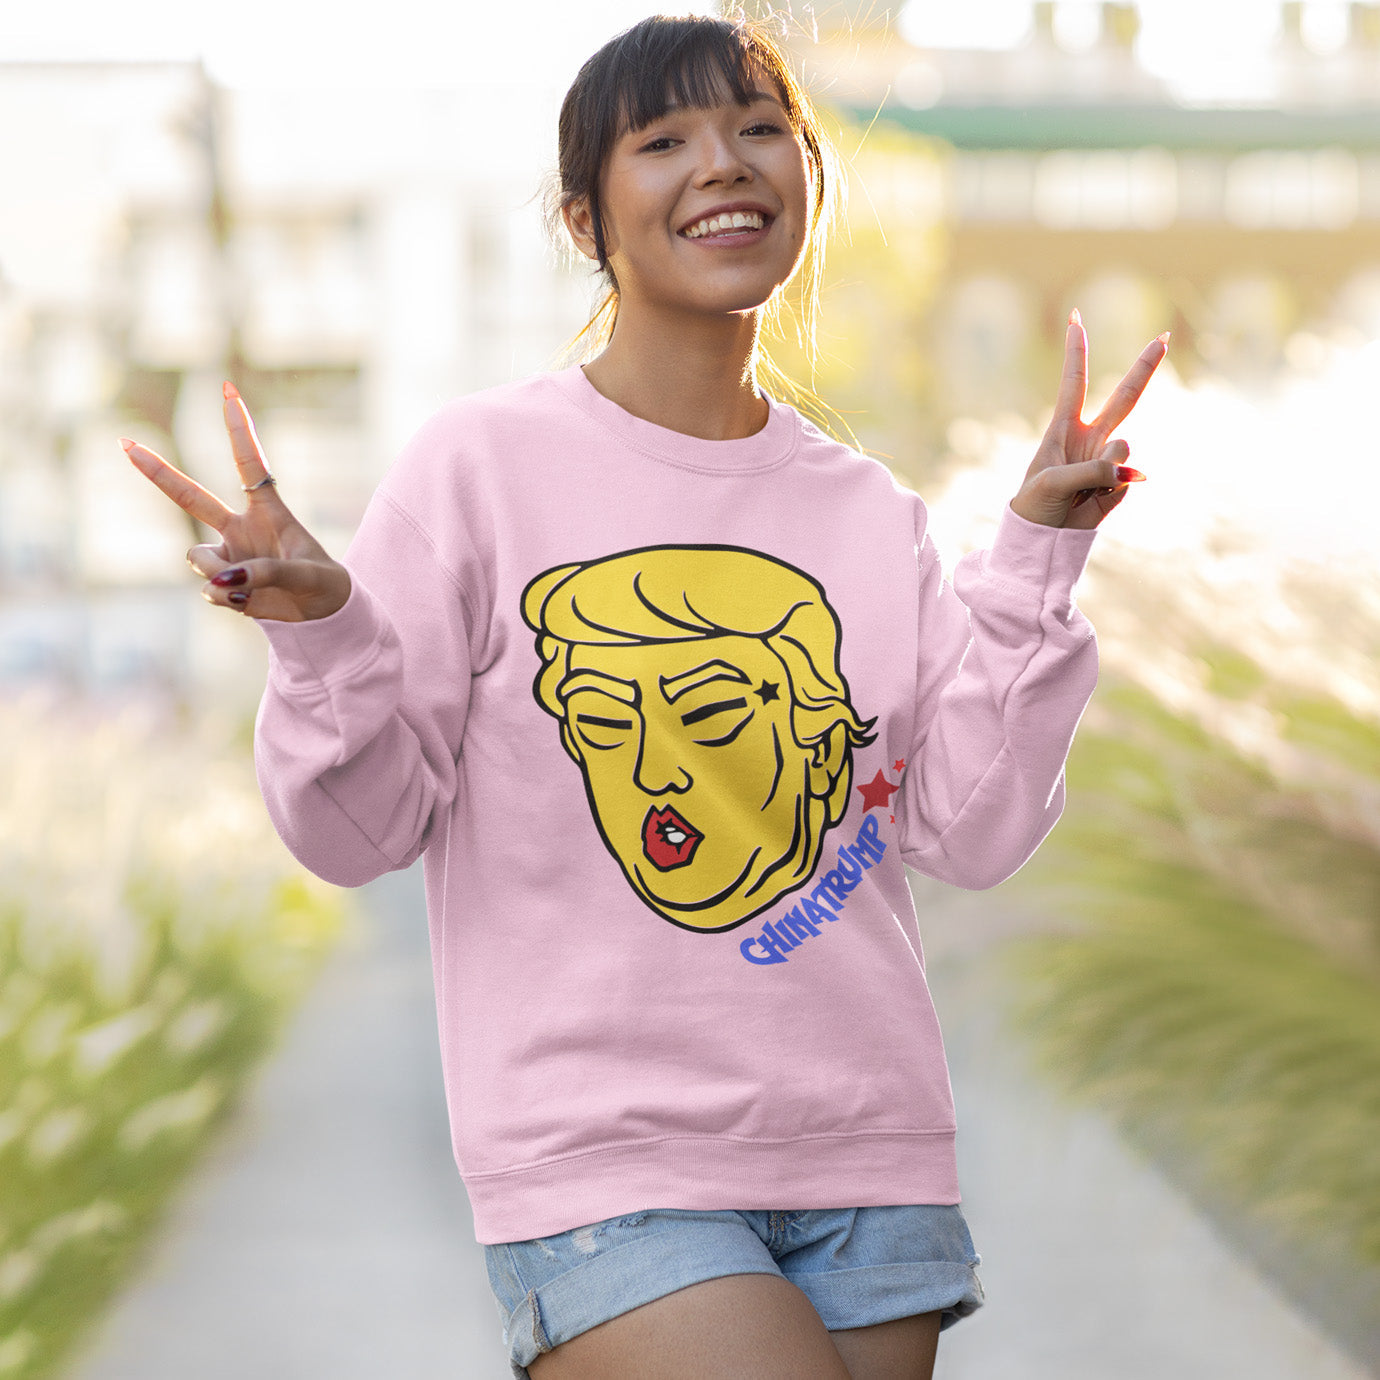 China-trump - Trump, Chinese Dictator | Meme Sweatshirt